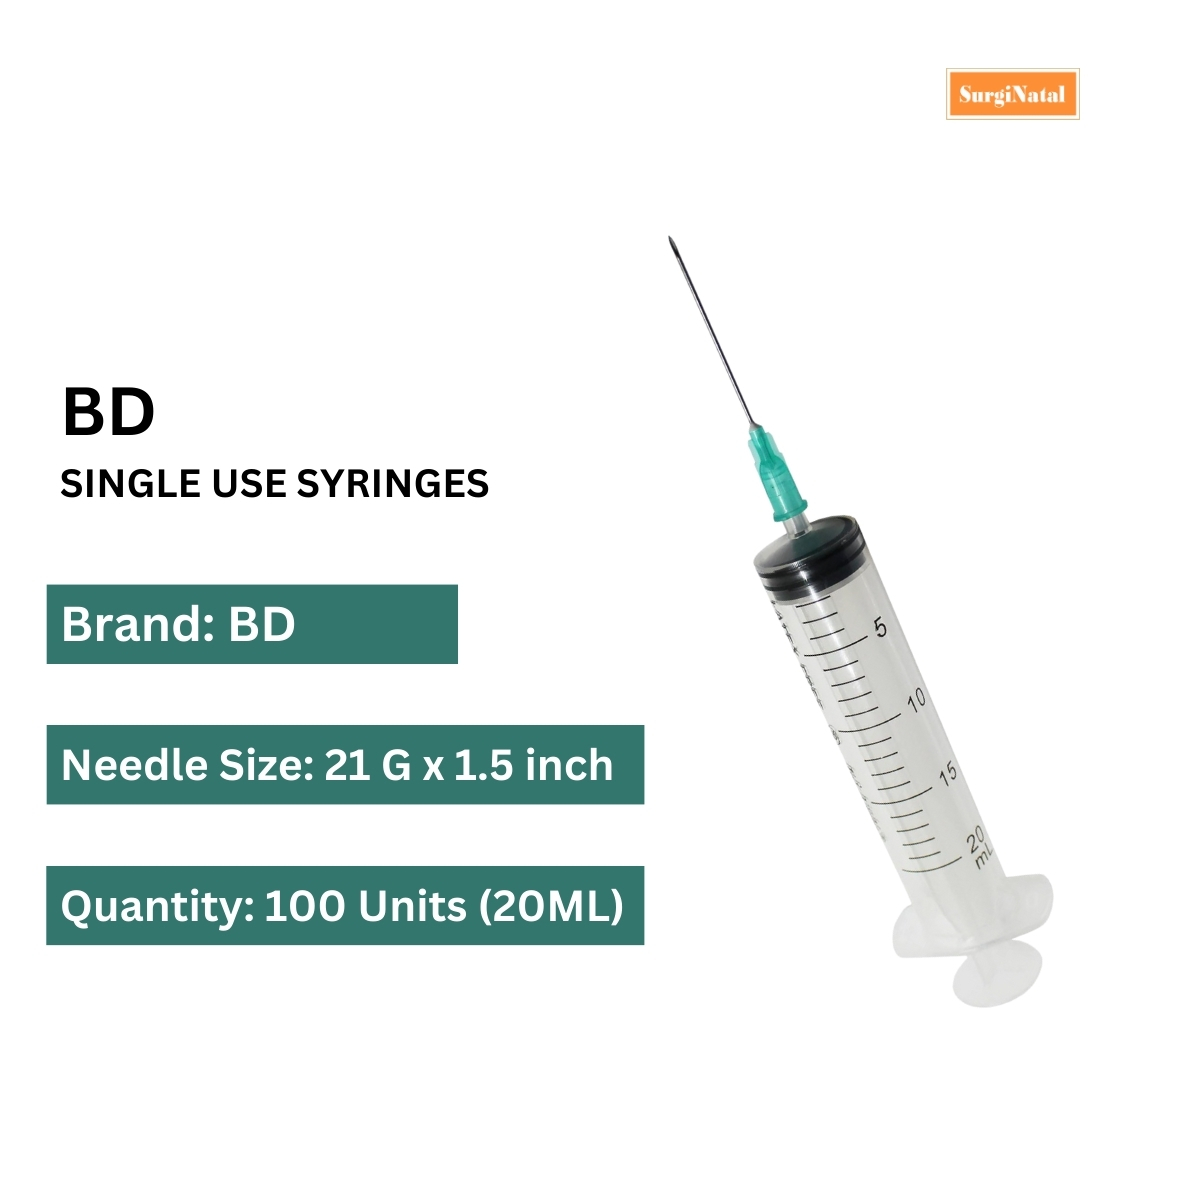 bd discardit syringe 20ml - 21g*1.5 inch